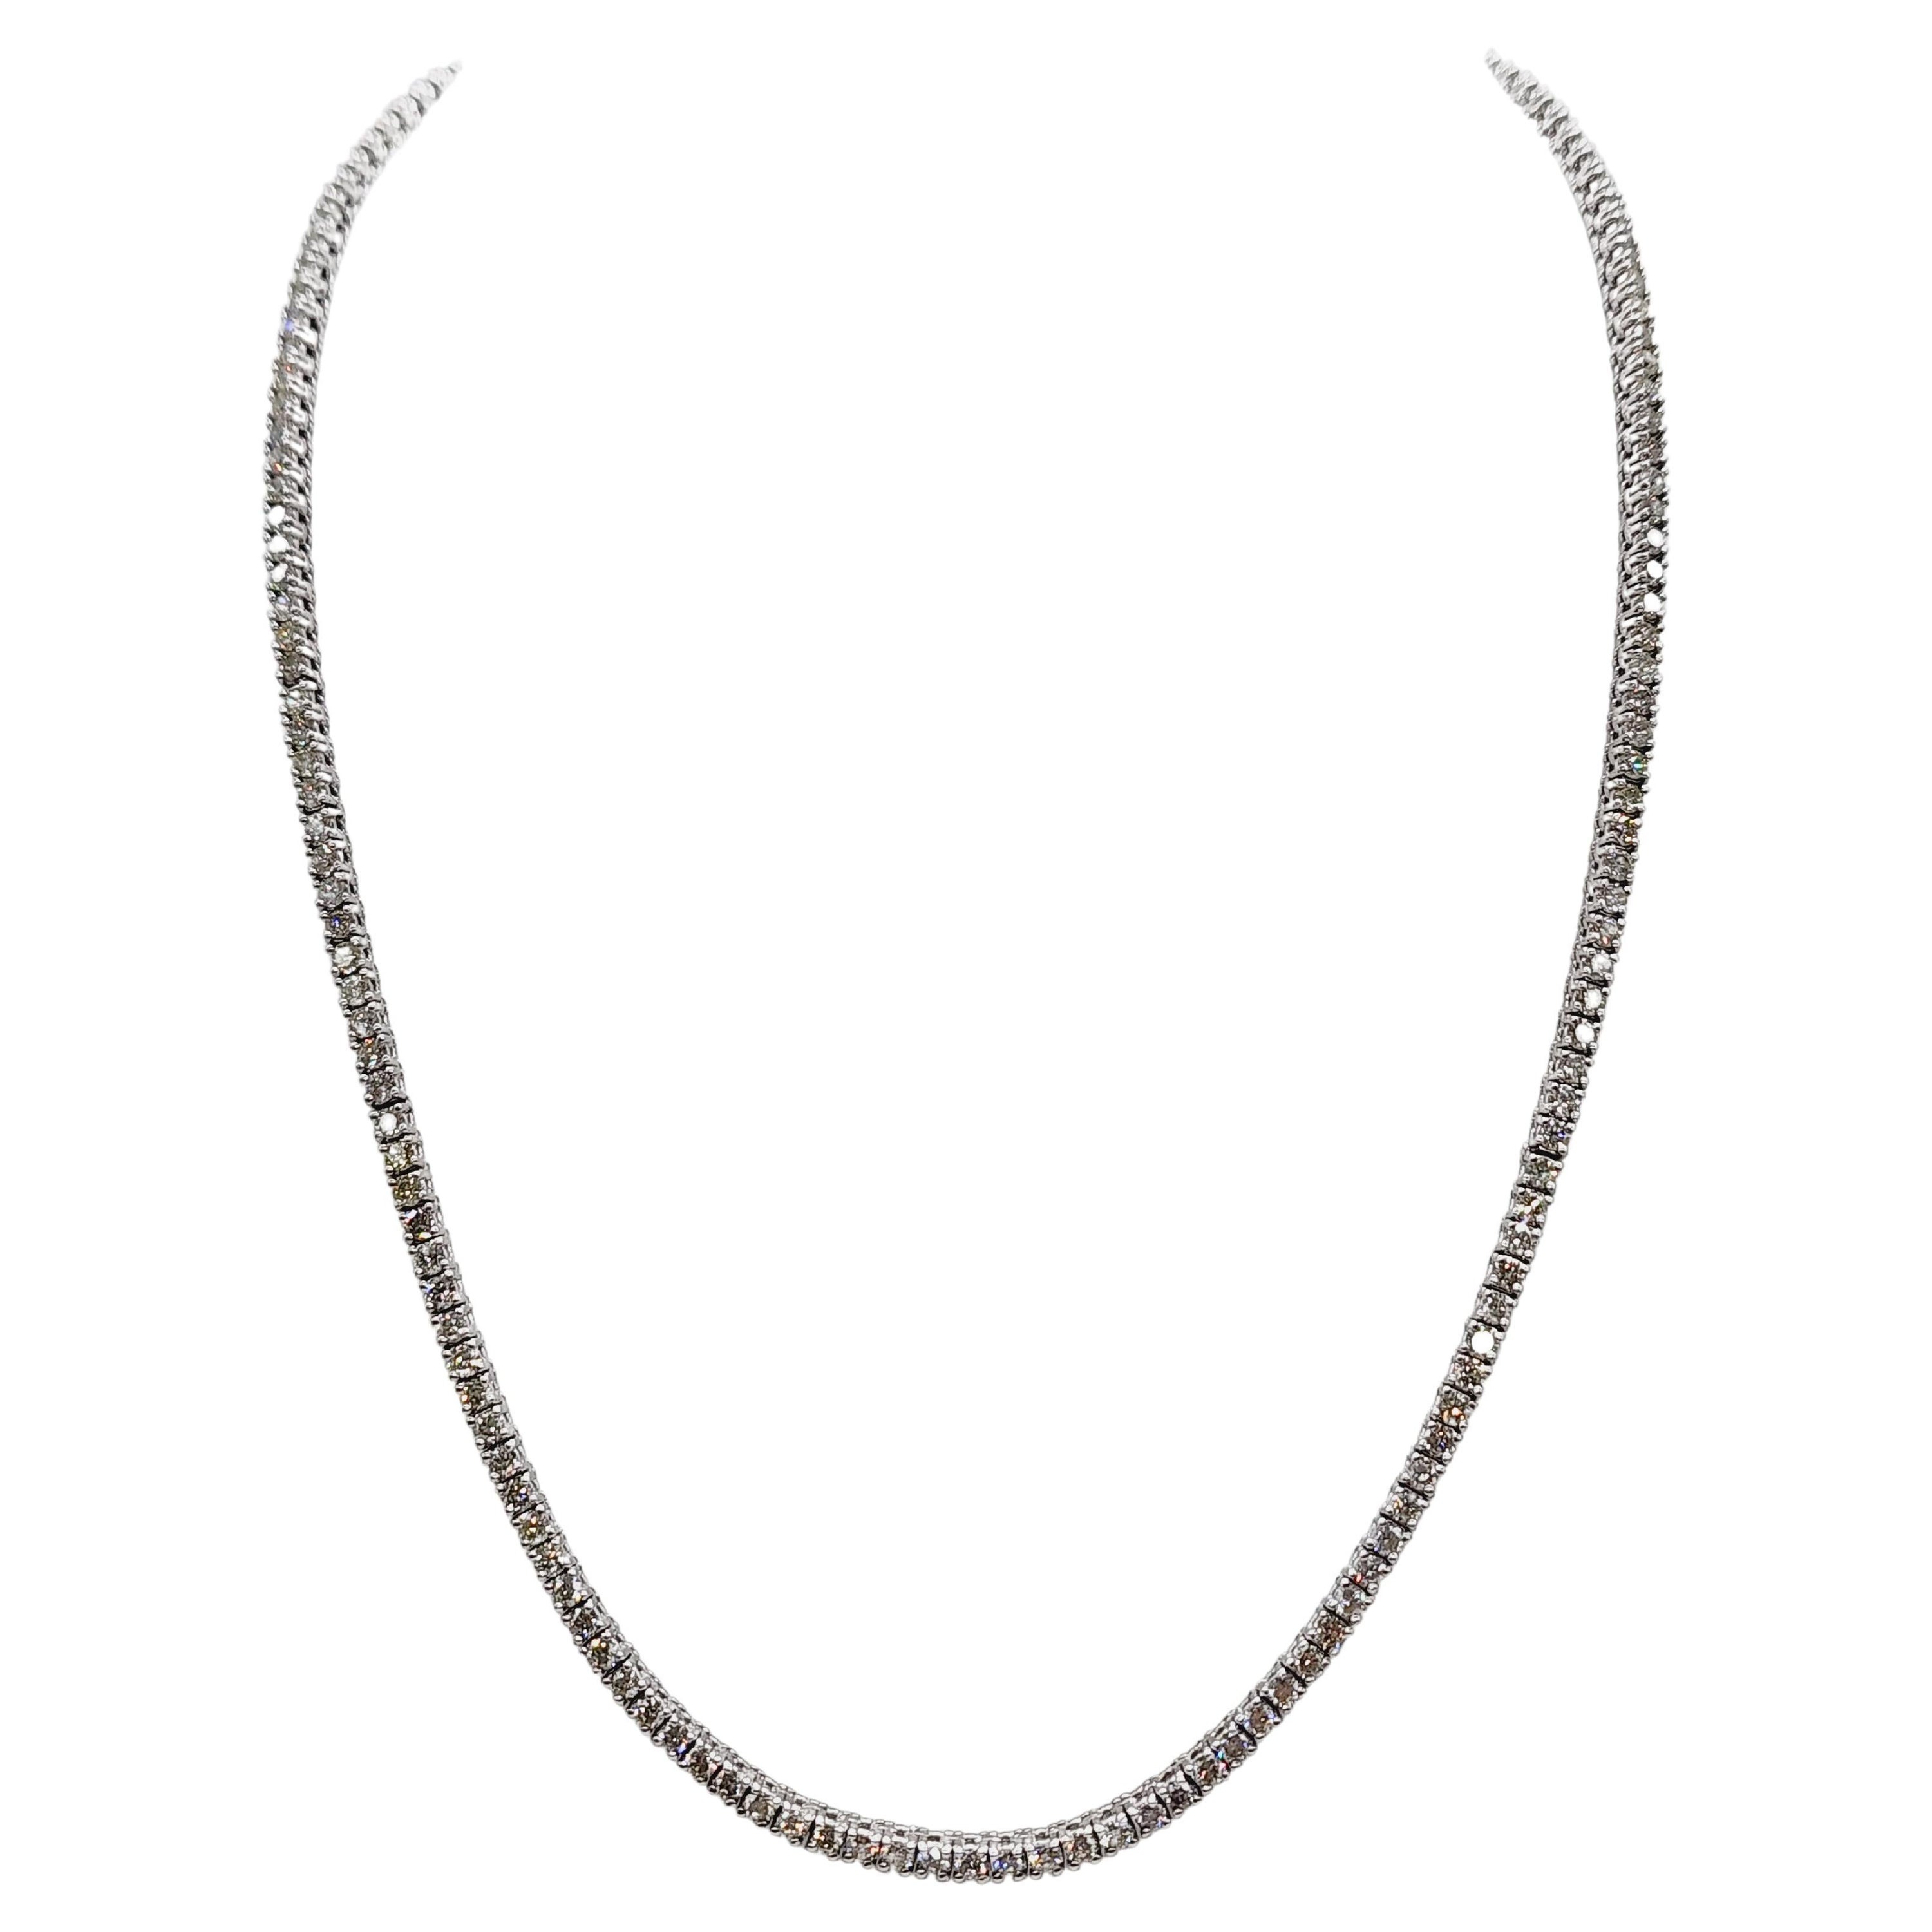 9.01 Carat Brilliant Cut Diamond Tennis Necklace 14 Karat White Gold 22" For Sale